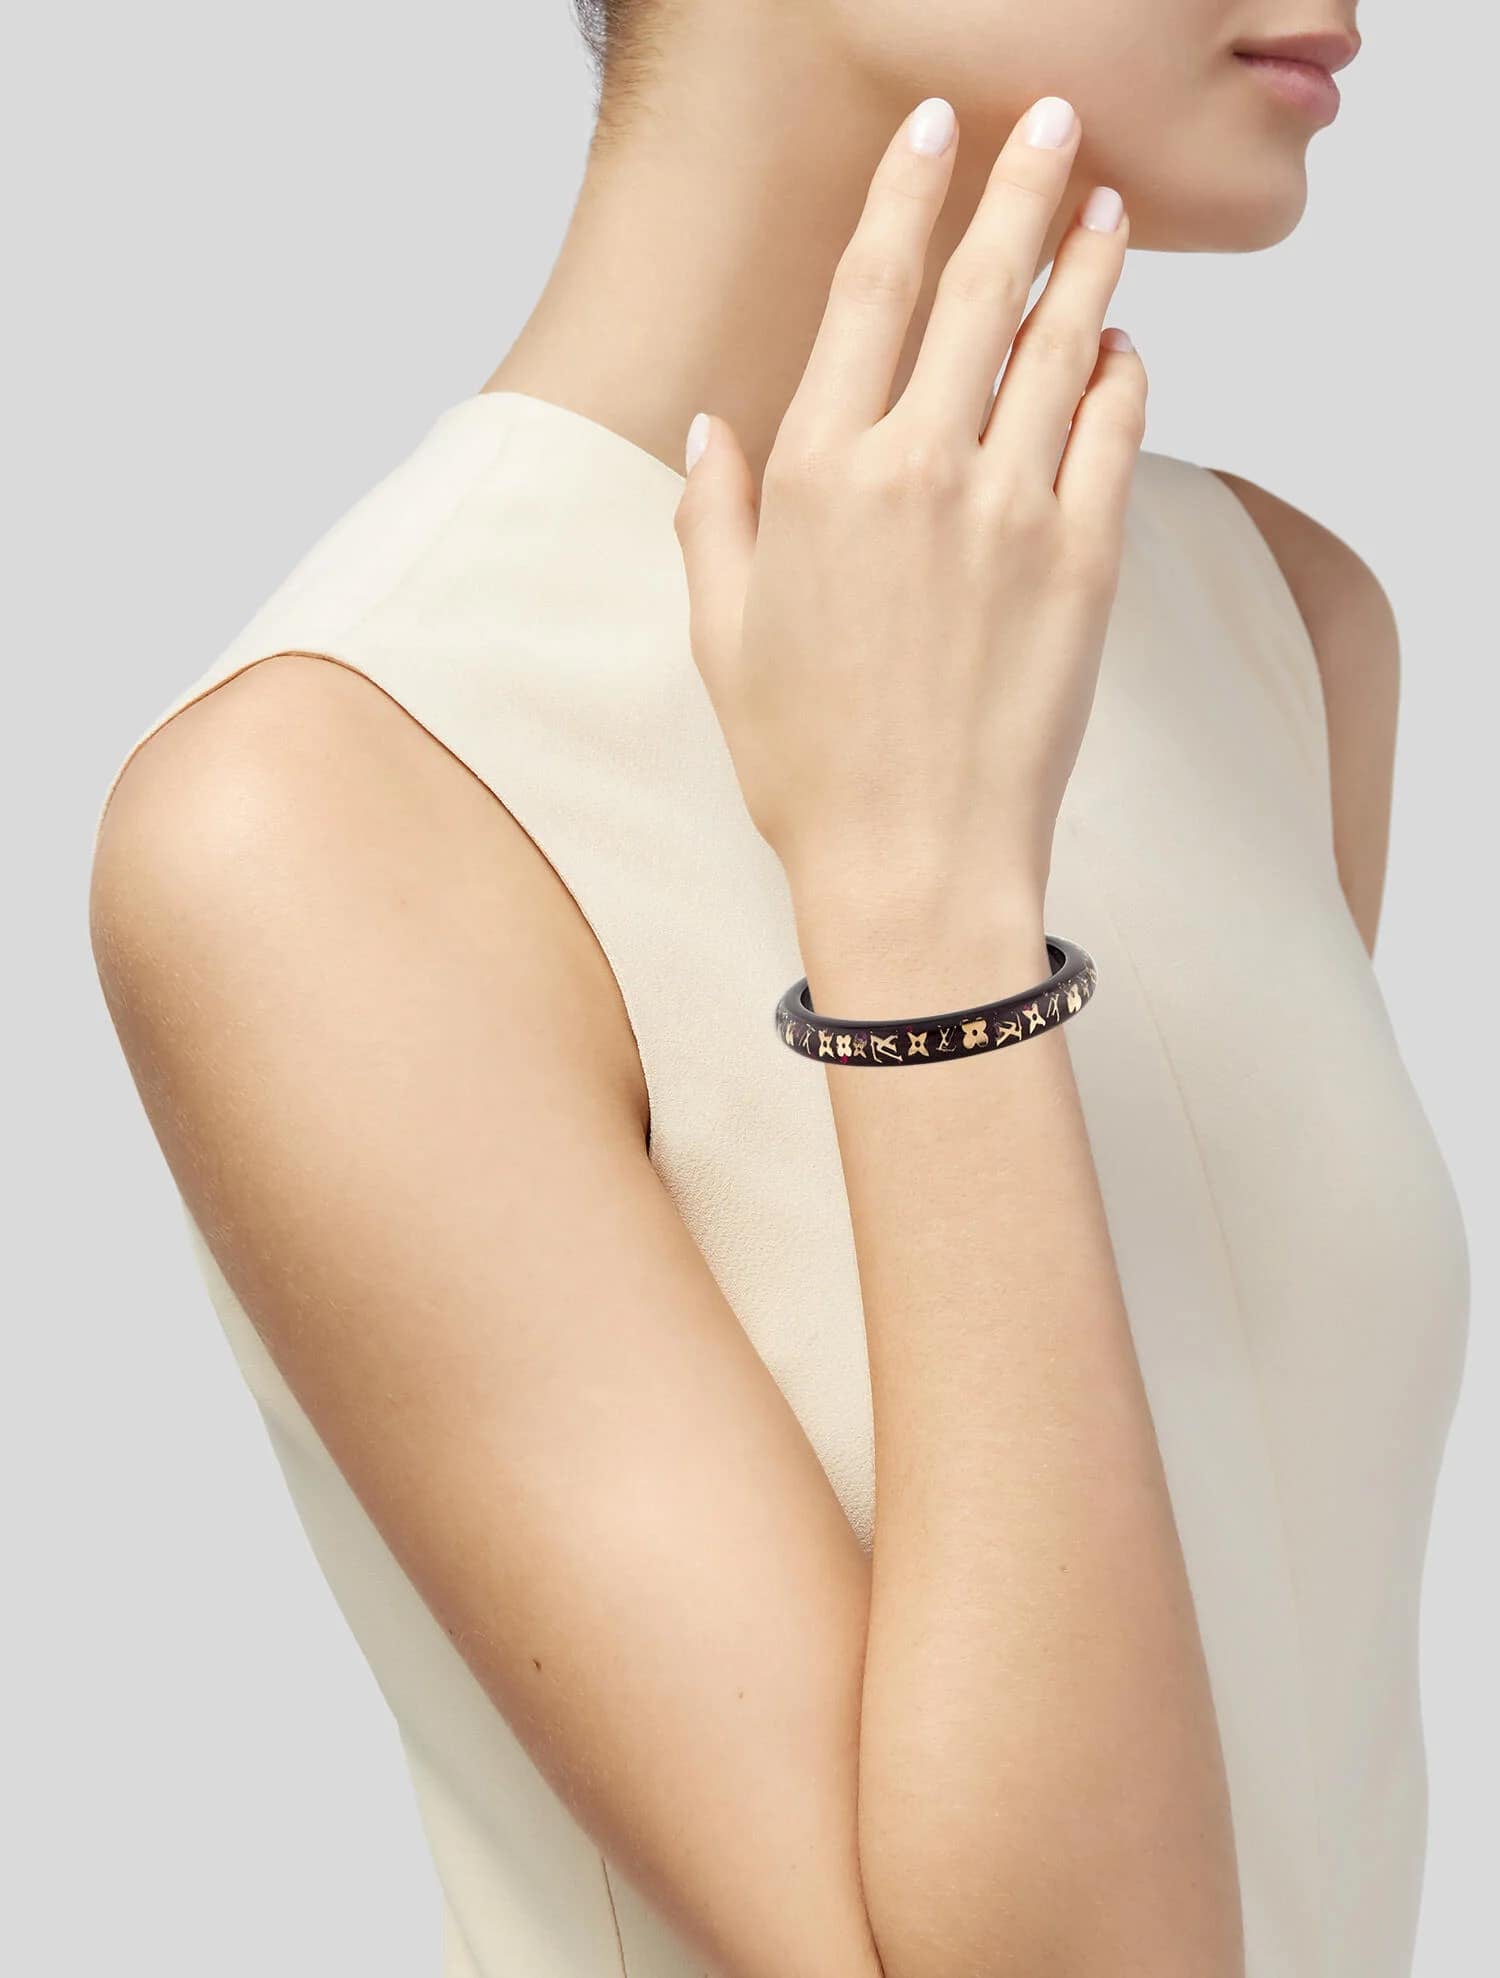 A Louis Vuitton Inclusion Bangle Bracelet.